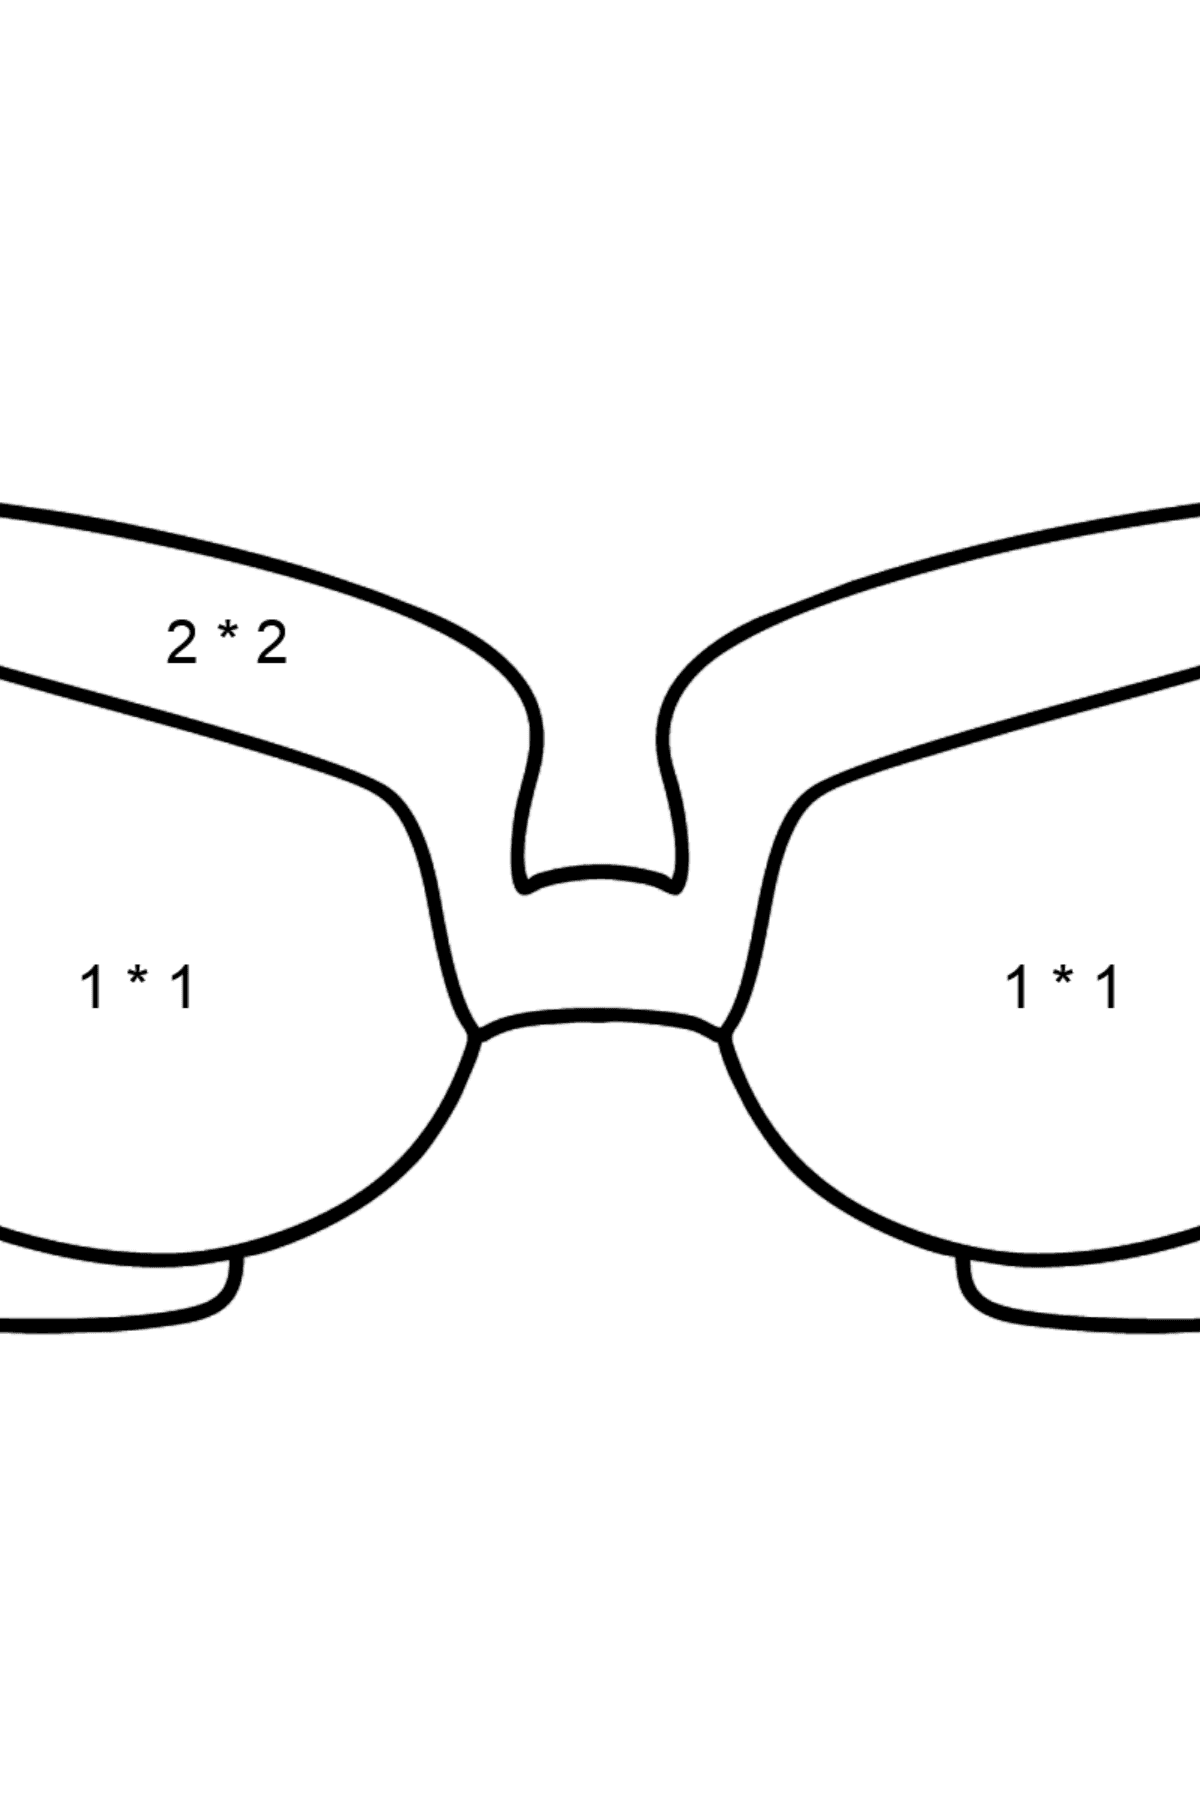 Kleurplaat bril (makkelijk) - Wiskunde kleurplaten - vermenigvuldiging voor kinderen